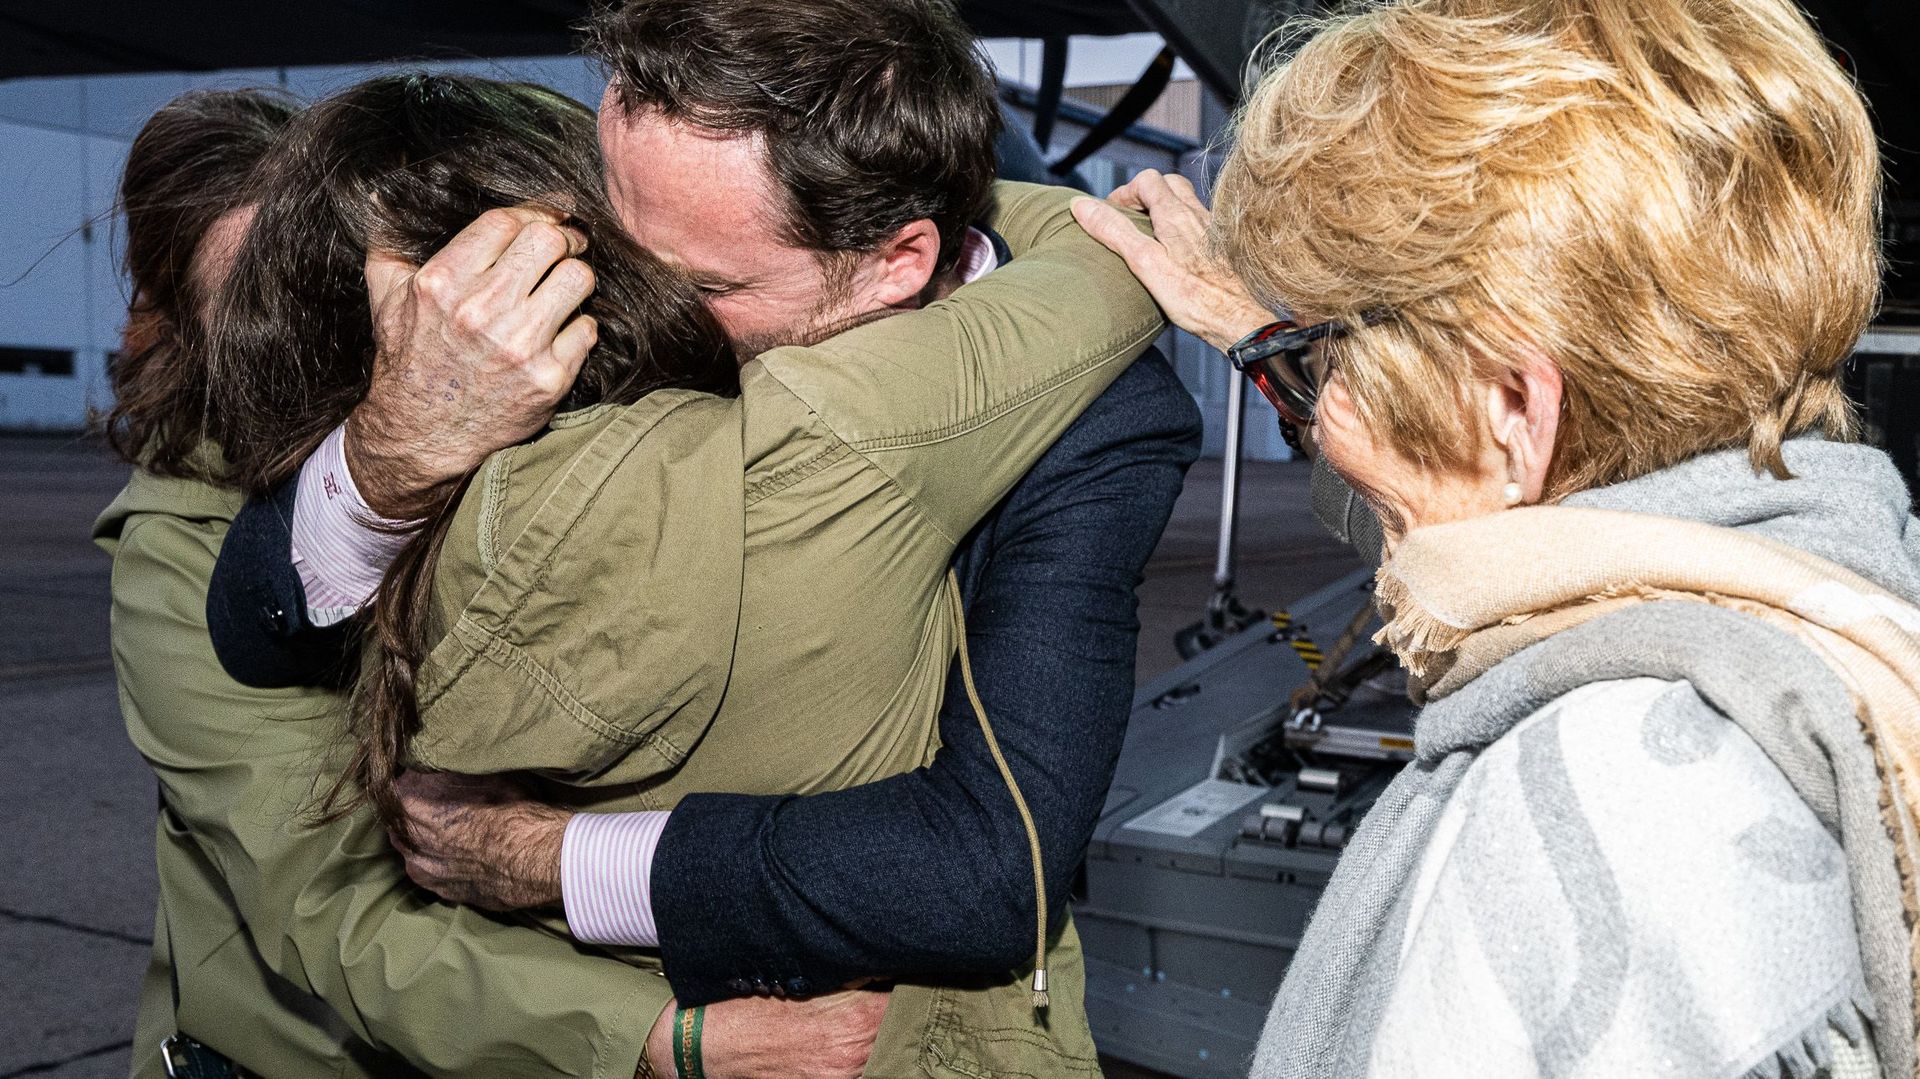 Olivier Vandecasteele dans les bras de ses proches, photographié par Vlad Vanderkelen sur le tarmac de l’aéroport.